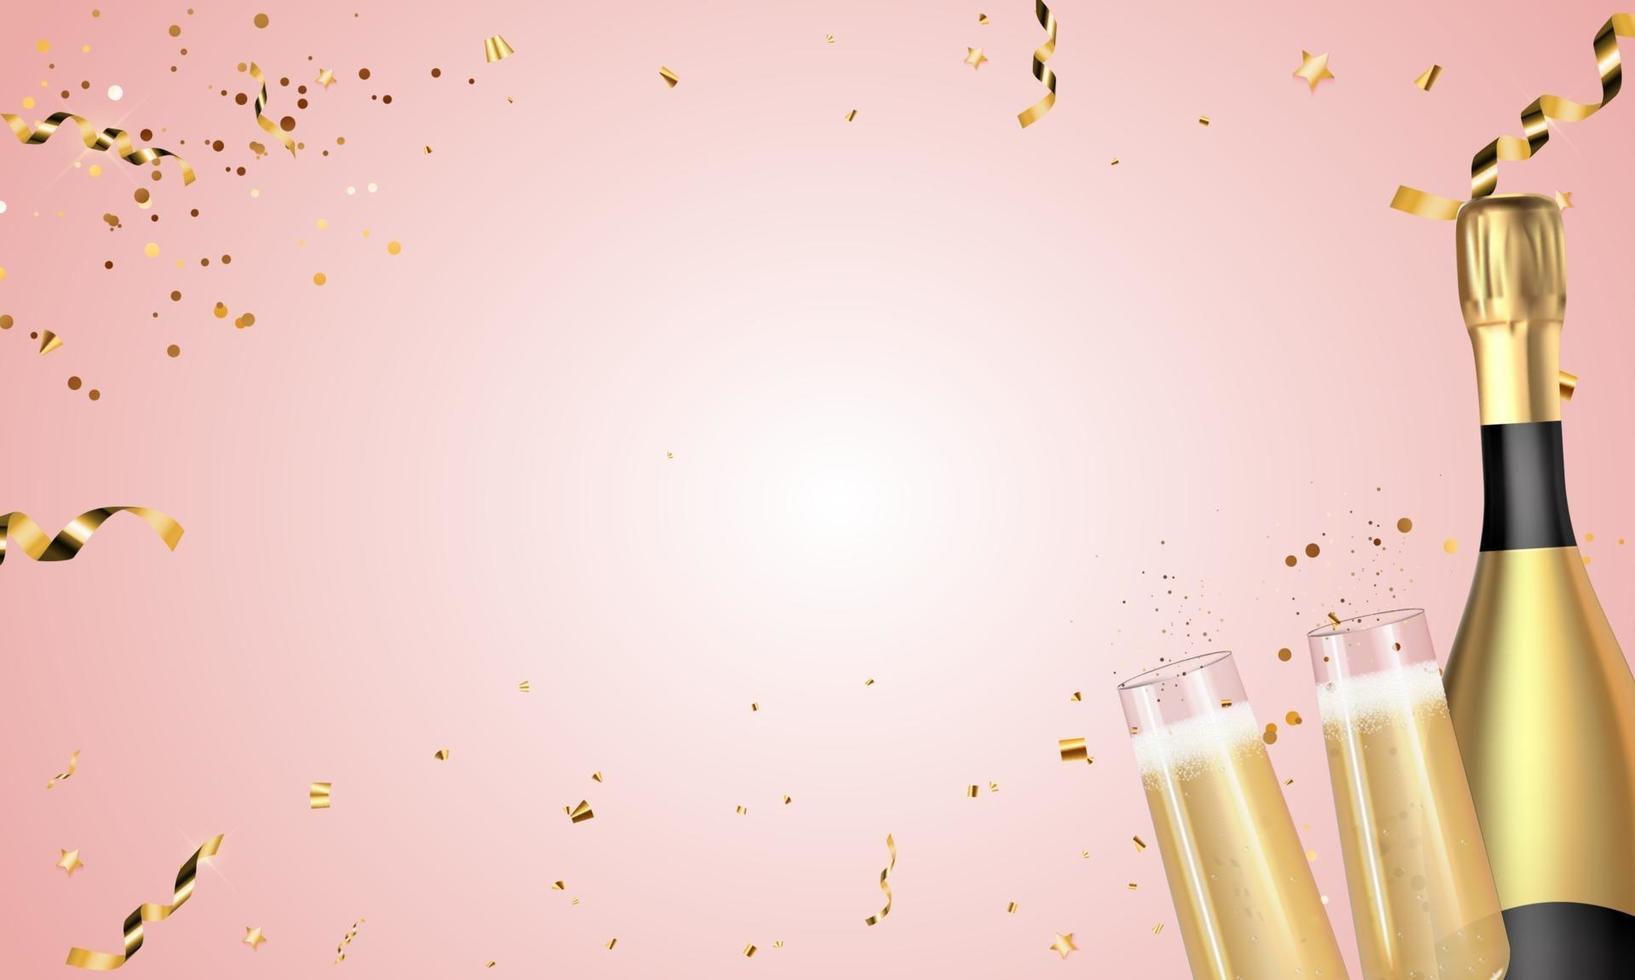 bouteille d'or champagne 3d réaliste et verres sur fond rose. illustration vectorielle vecteur